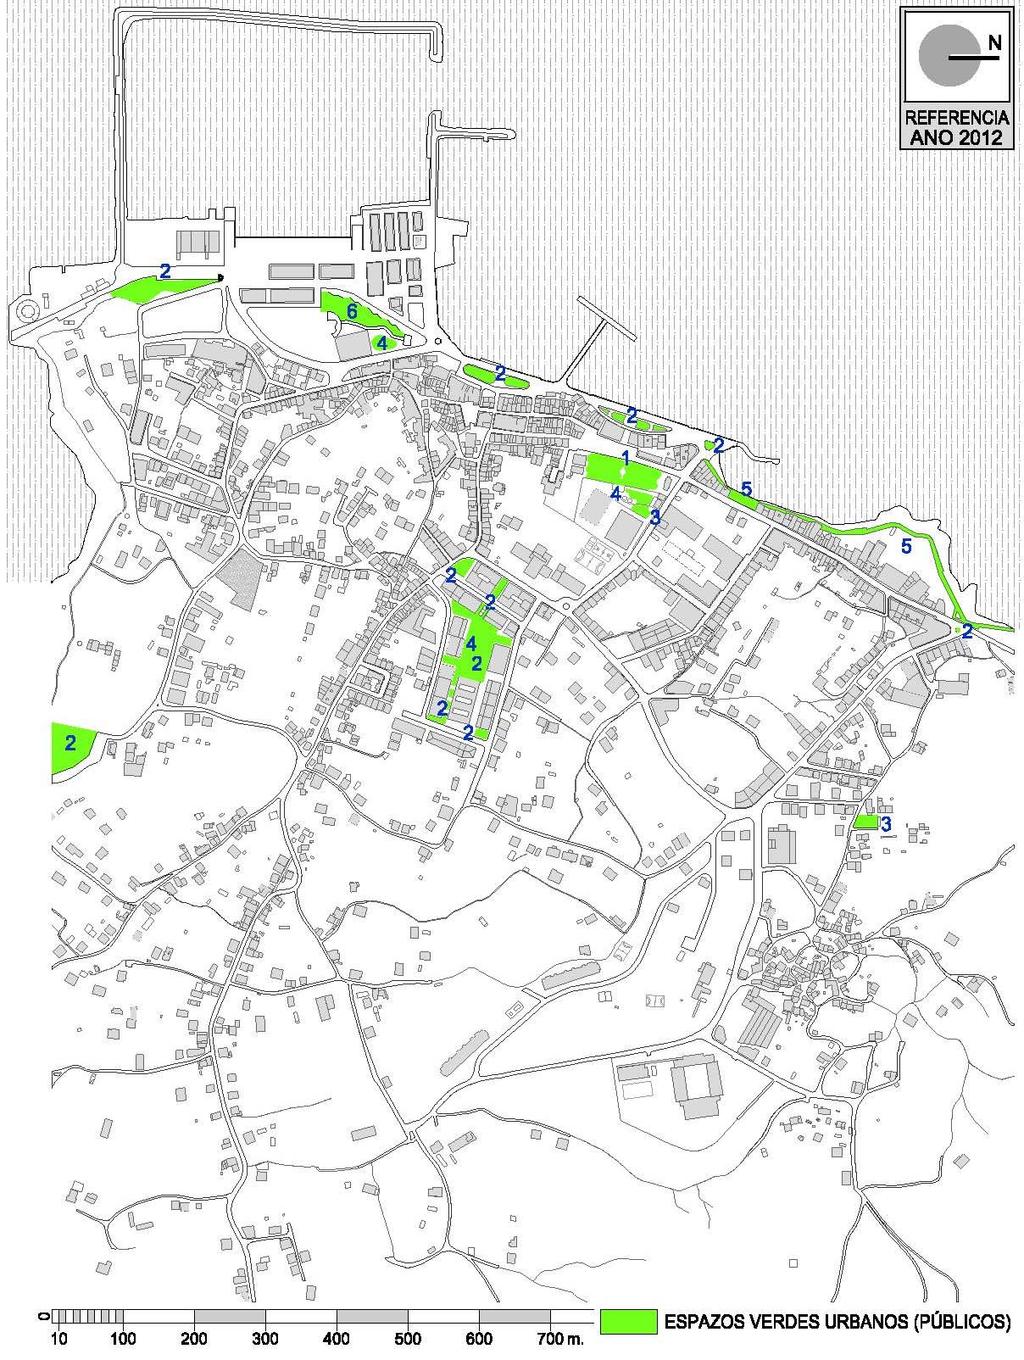 Principais aspectos da transformación morfolóxica Rianxo en 2012. Imaxe 152: Plano onde se dispoñen as zonas verdes existentes no ano 2012.